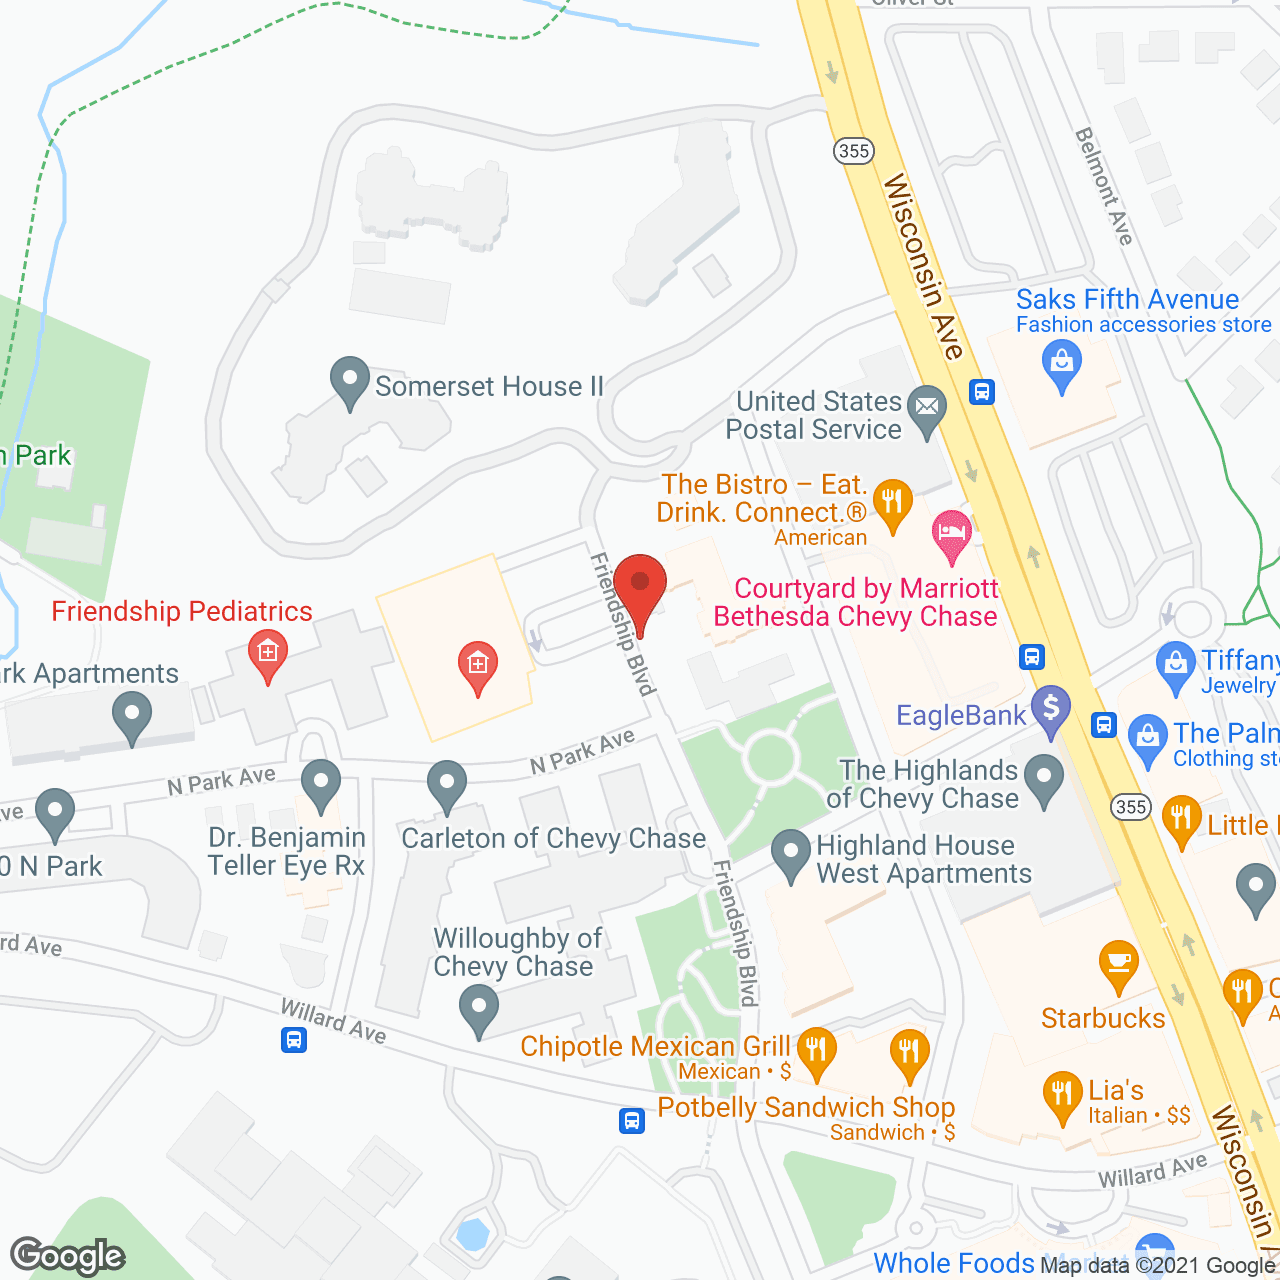 Brighton Gardens of Friendship Heights in google map